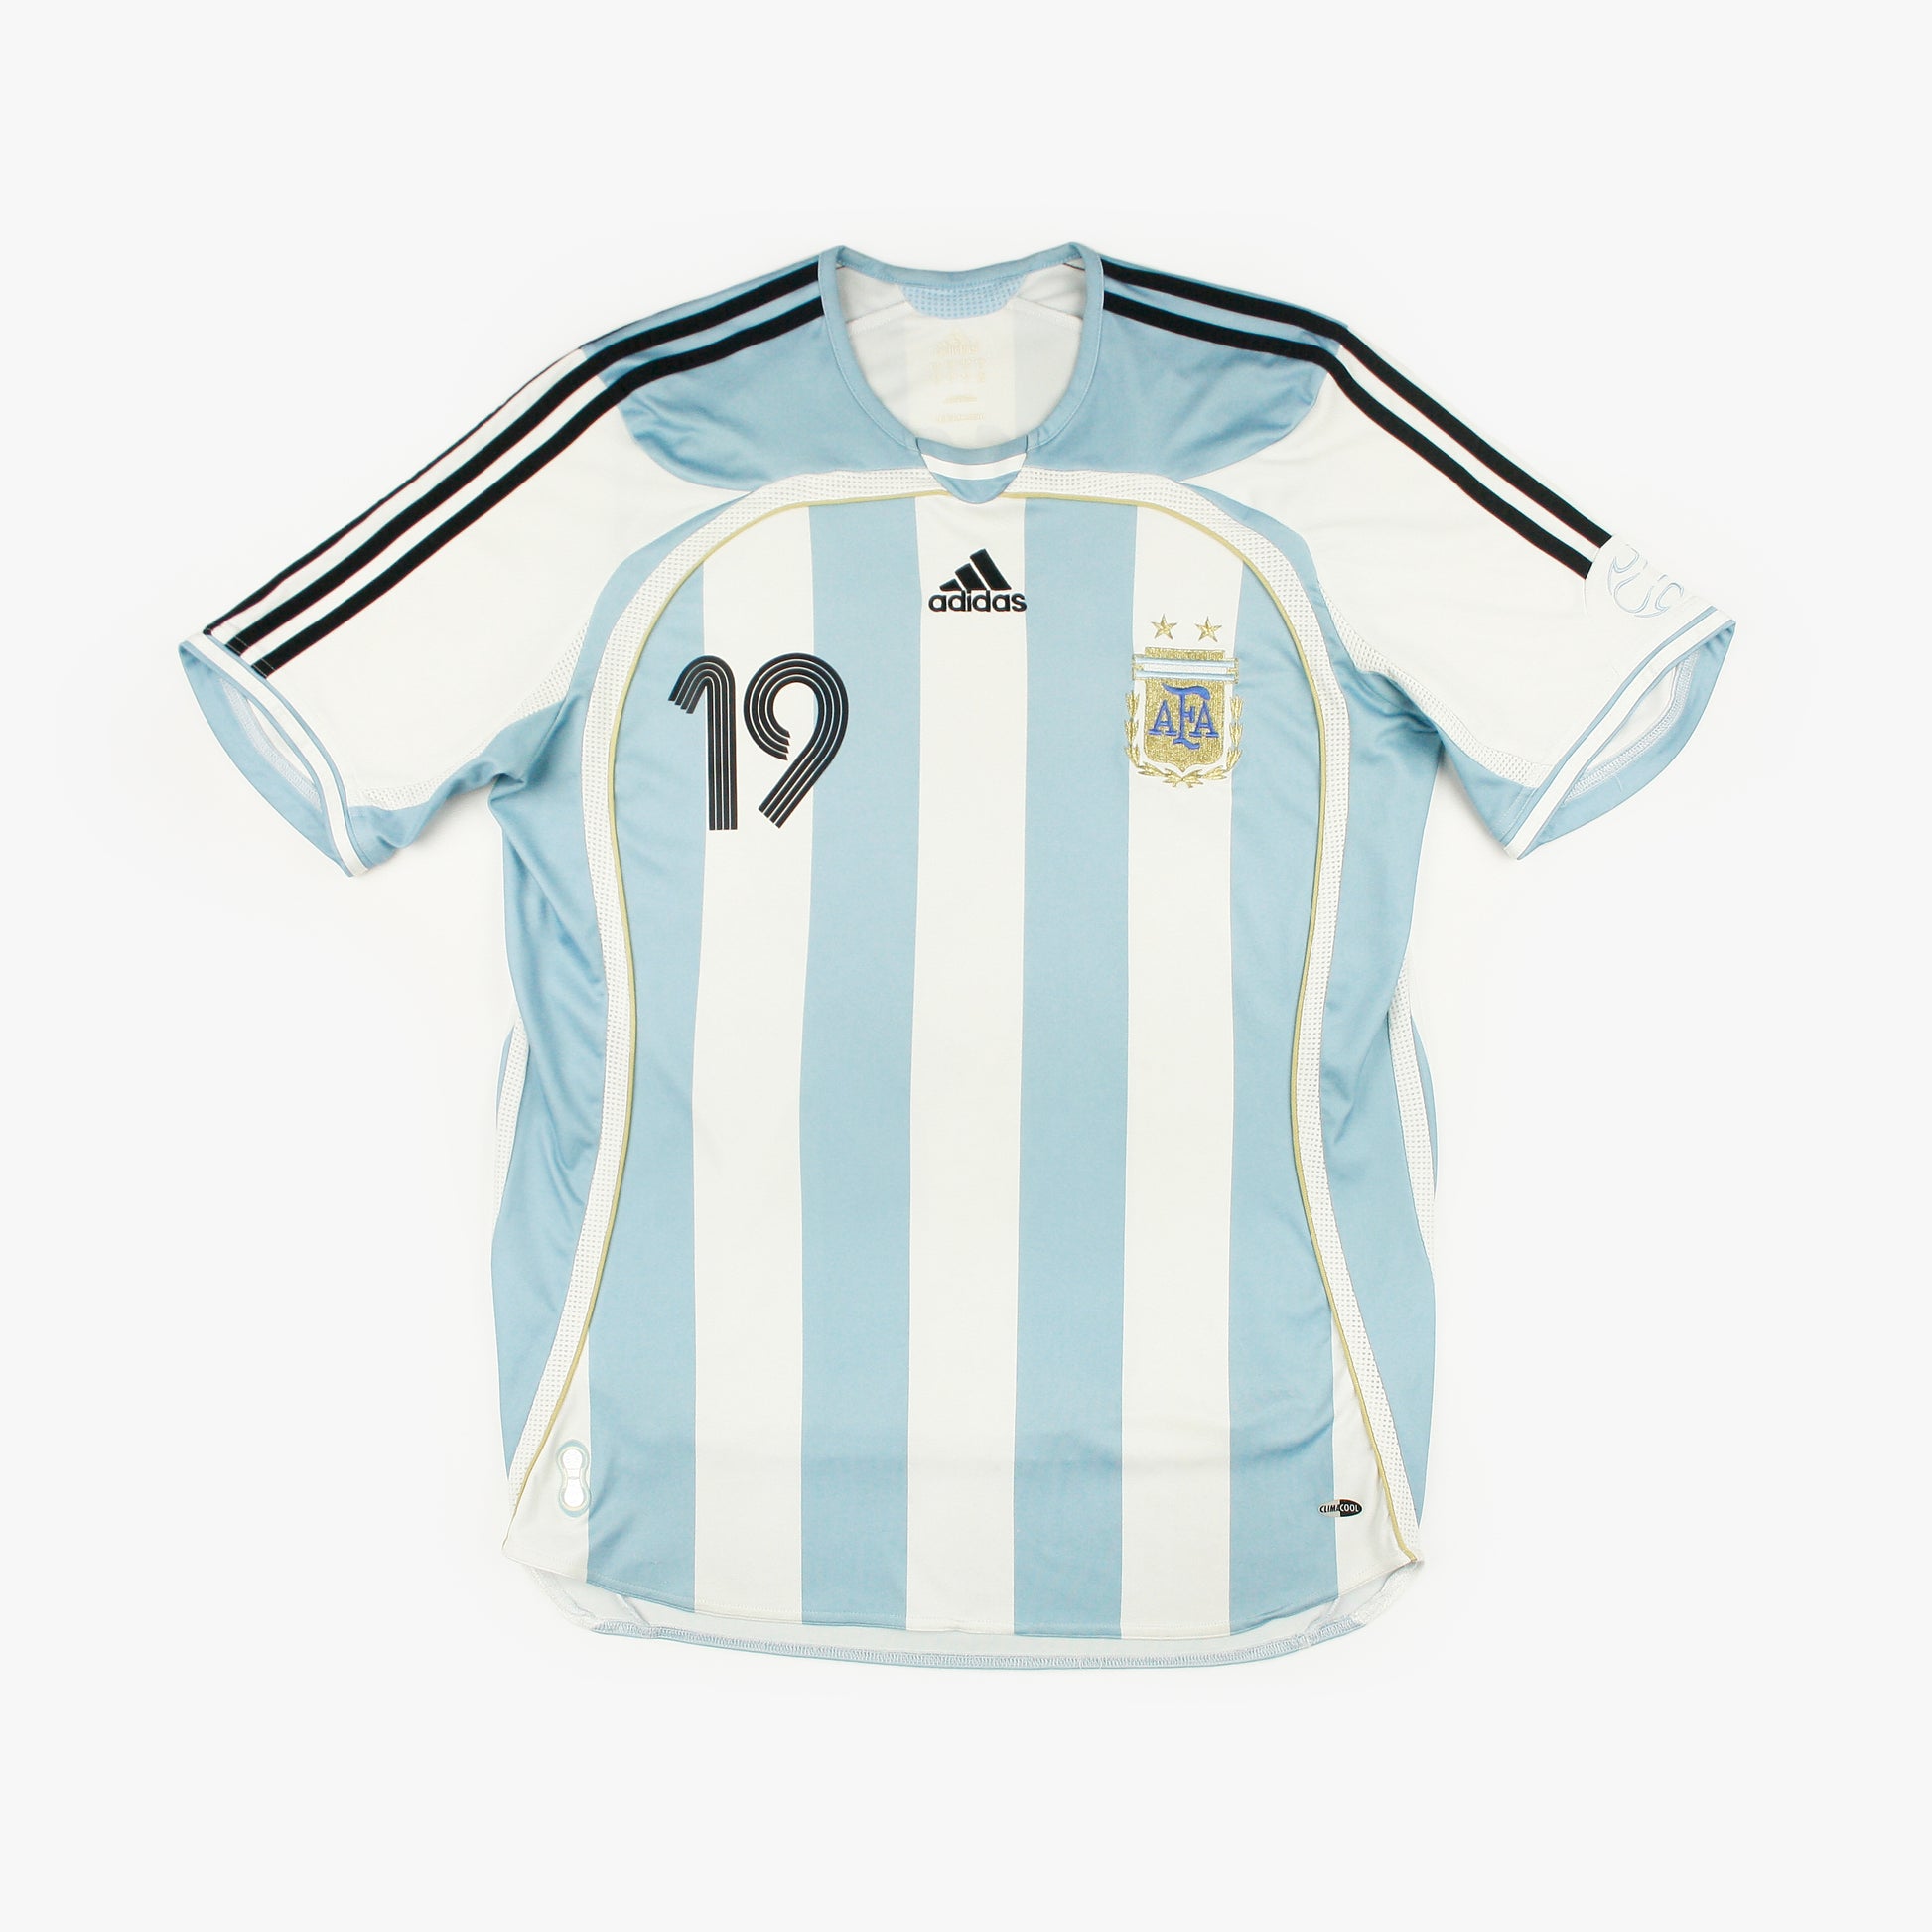 Camiseta argentina messi